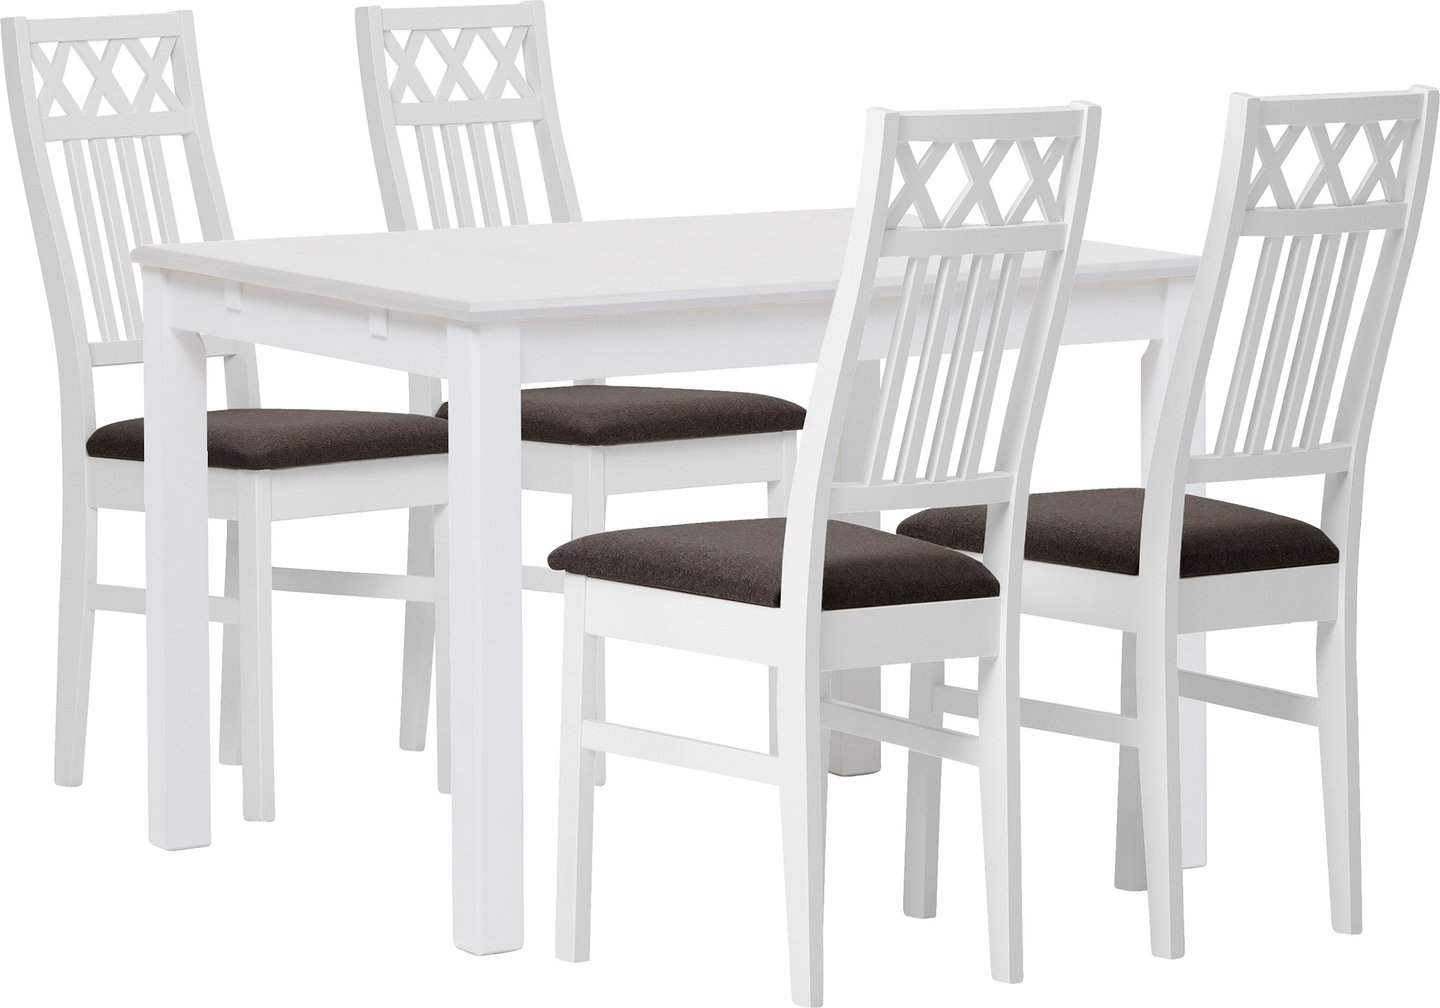 Hovi ruokailuryhmä 120x85. Valkoinen pöytä. Valkoinen tuoli, ruskea verhoilu